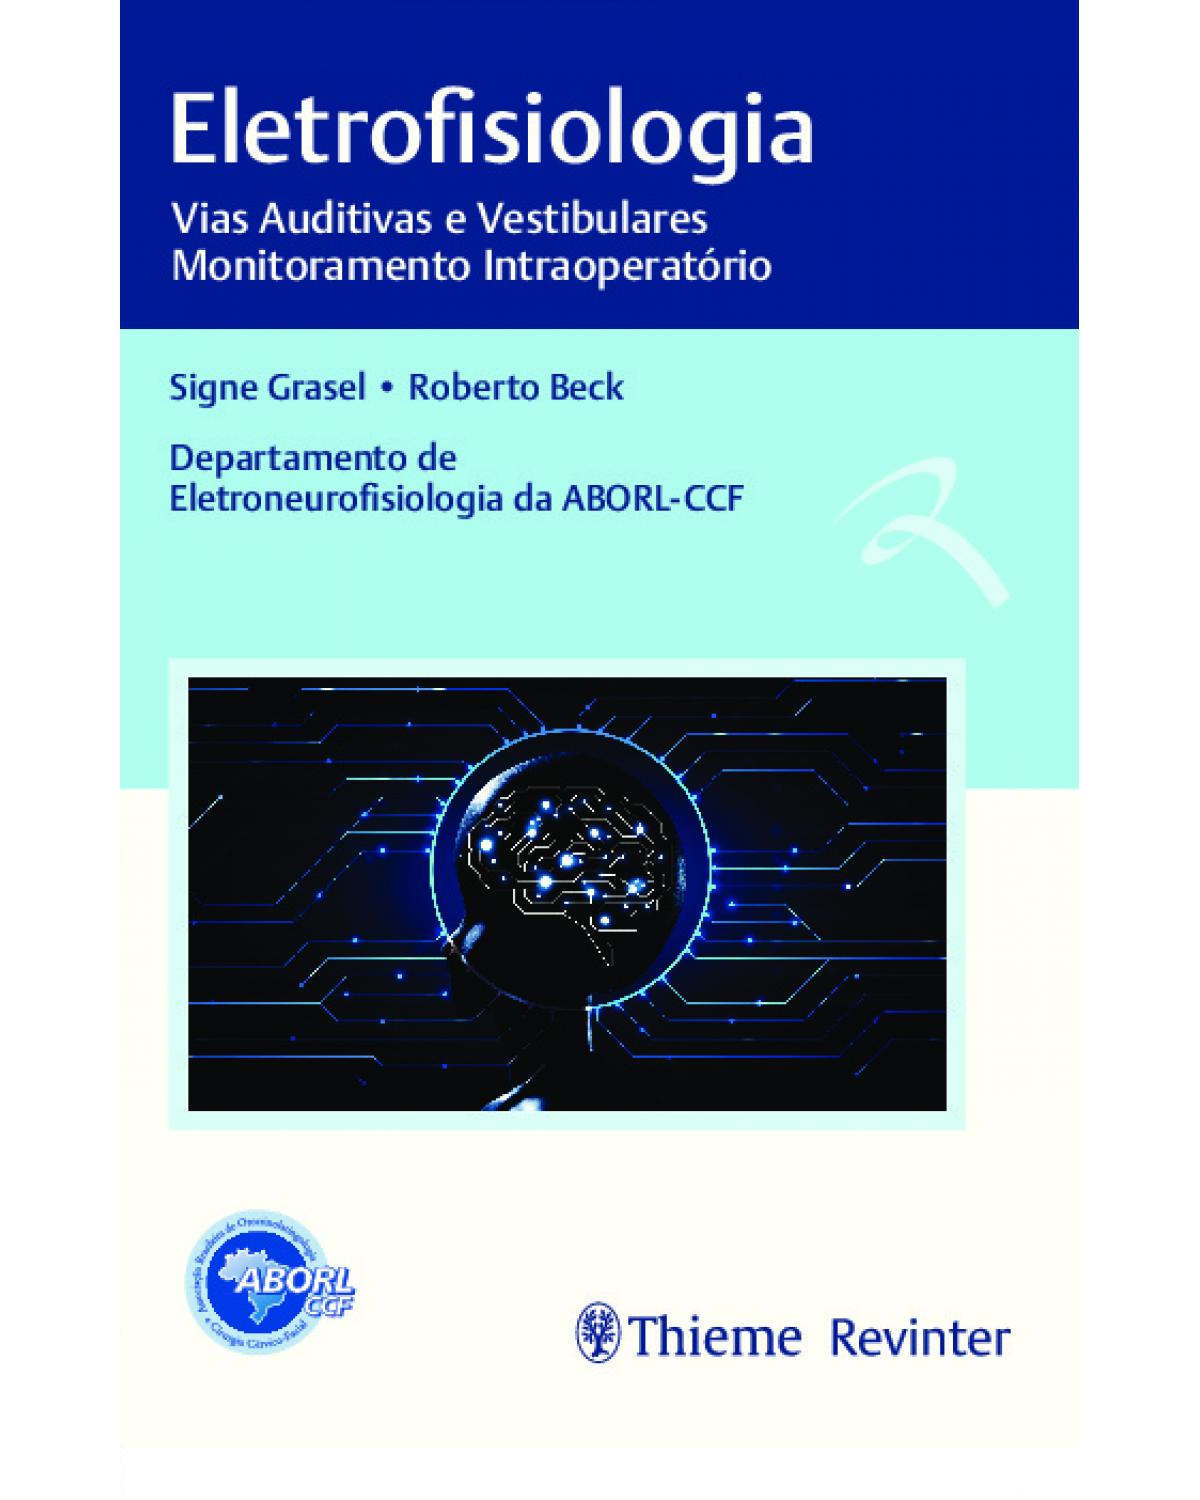 Eletrofisiologia - vias auditivas e vestibulares, monitoramento intraoperatório - 1ª Edição | 2020